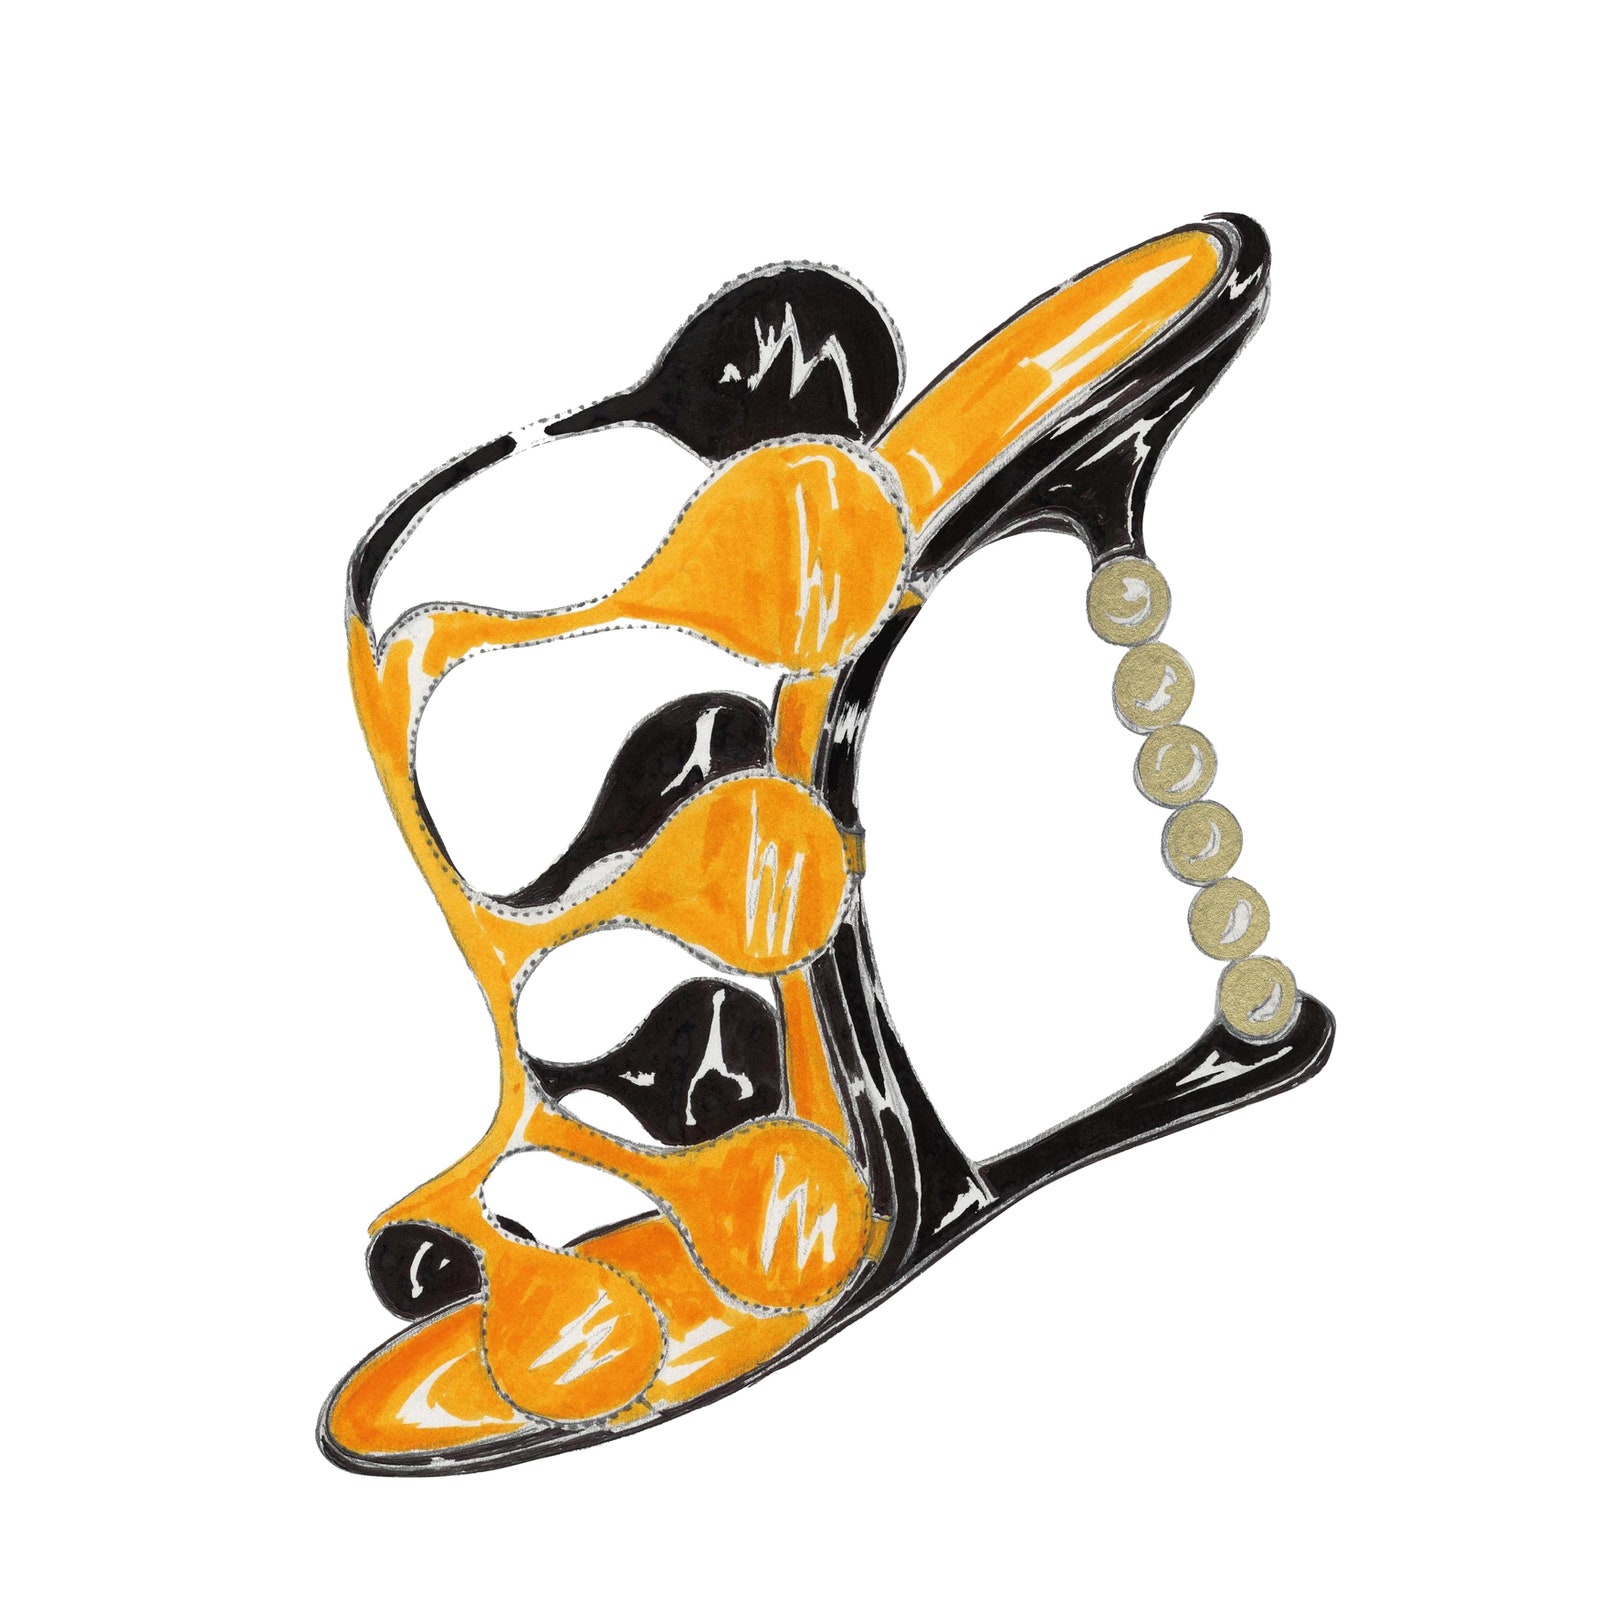 Раскраска с обувью Маноло Бланика &- лучшее офлайн-развлечение